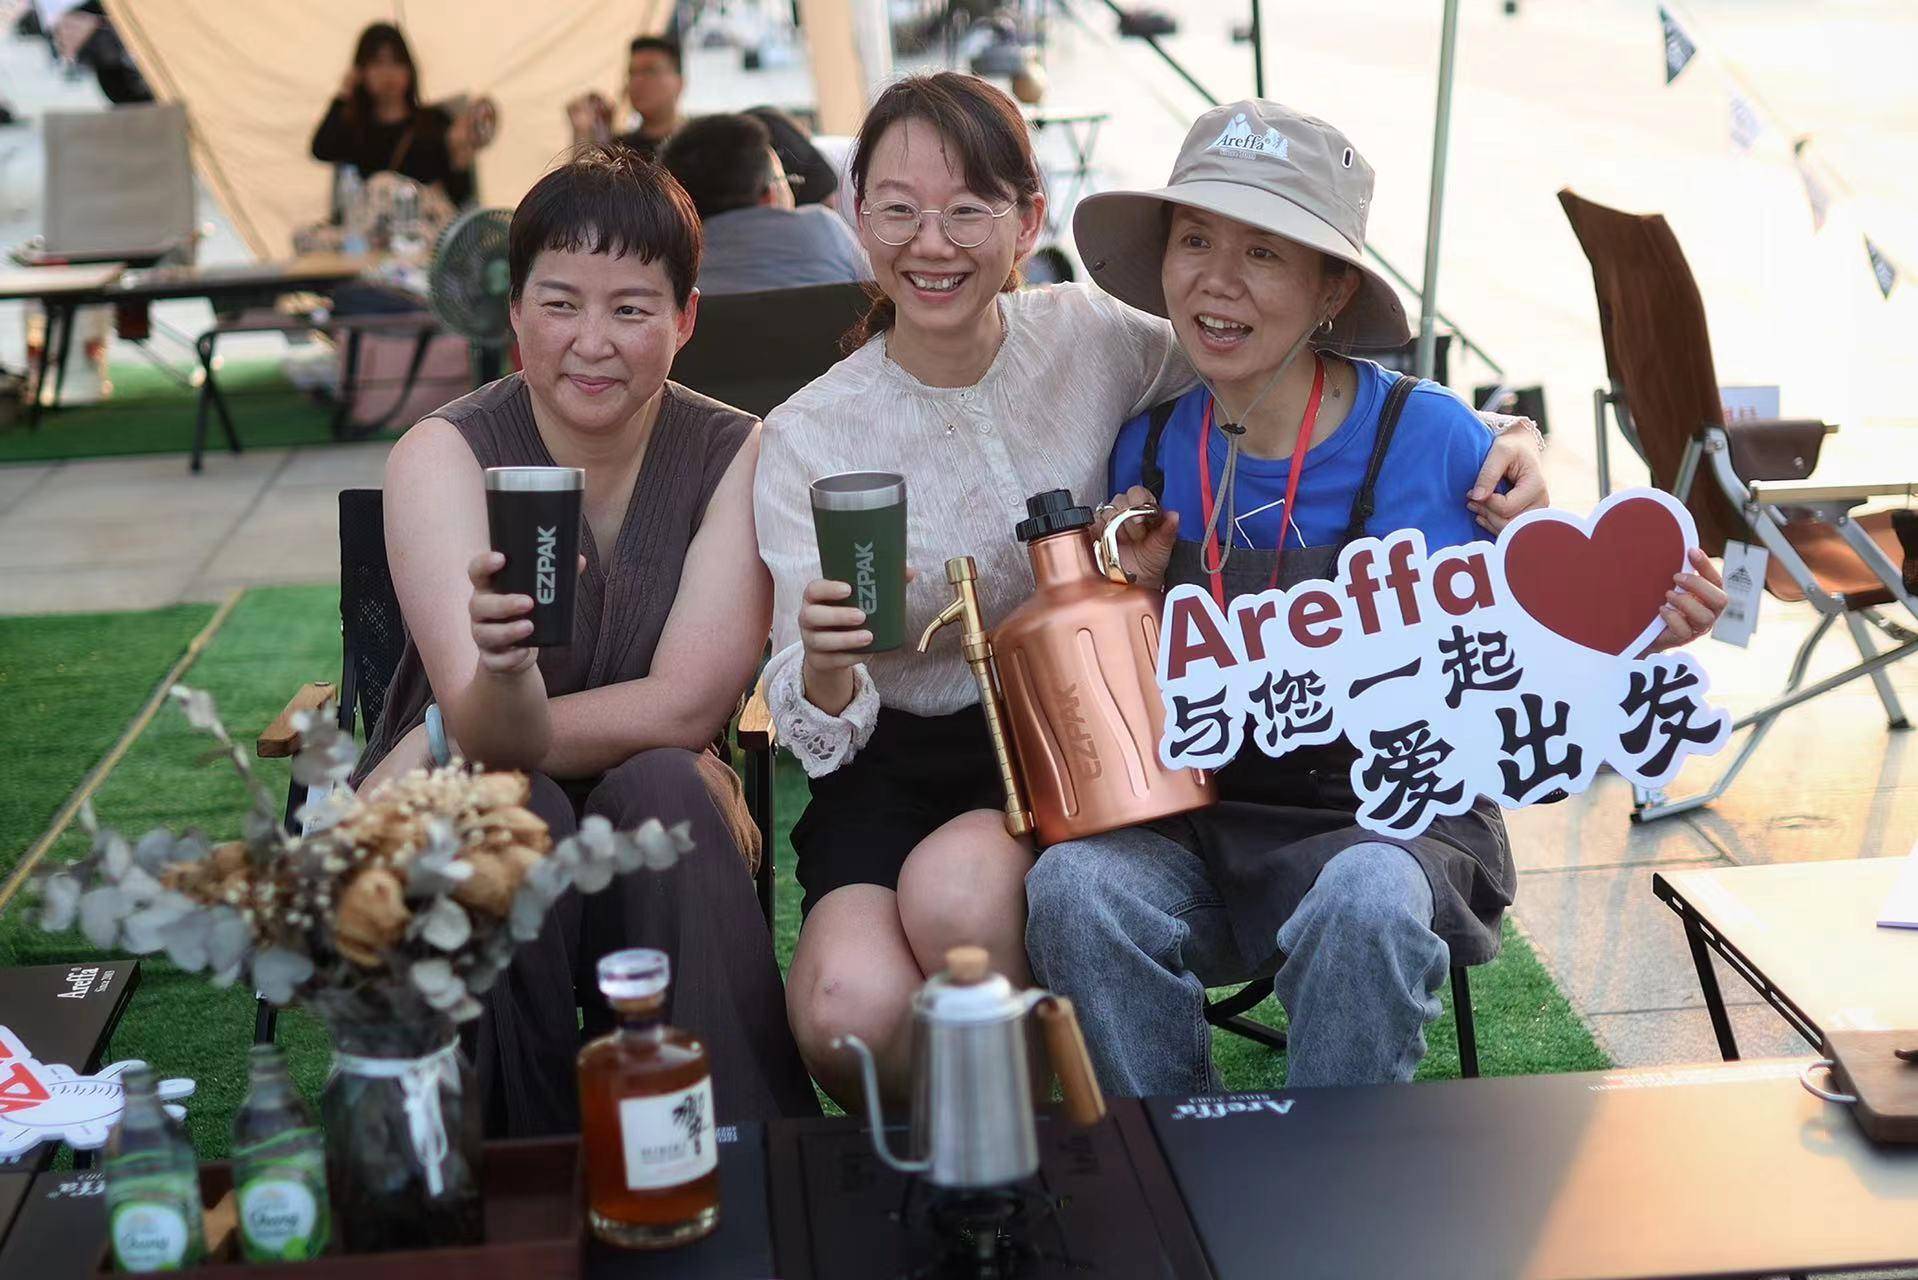 广州塔下的露营派对：国内首个“种蘑菇”主题露营活动开启